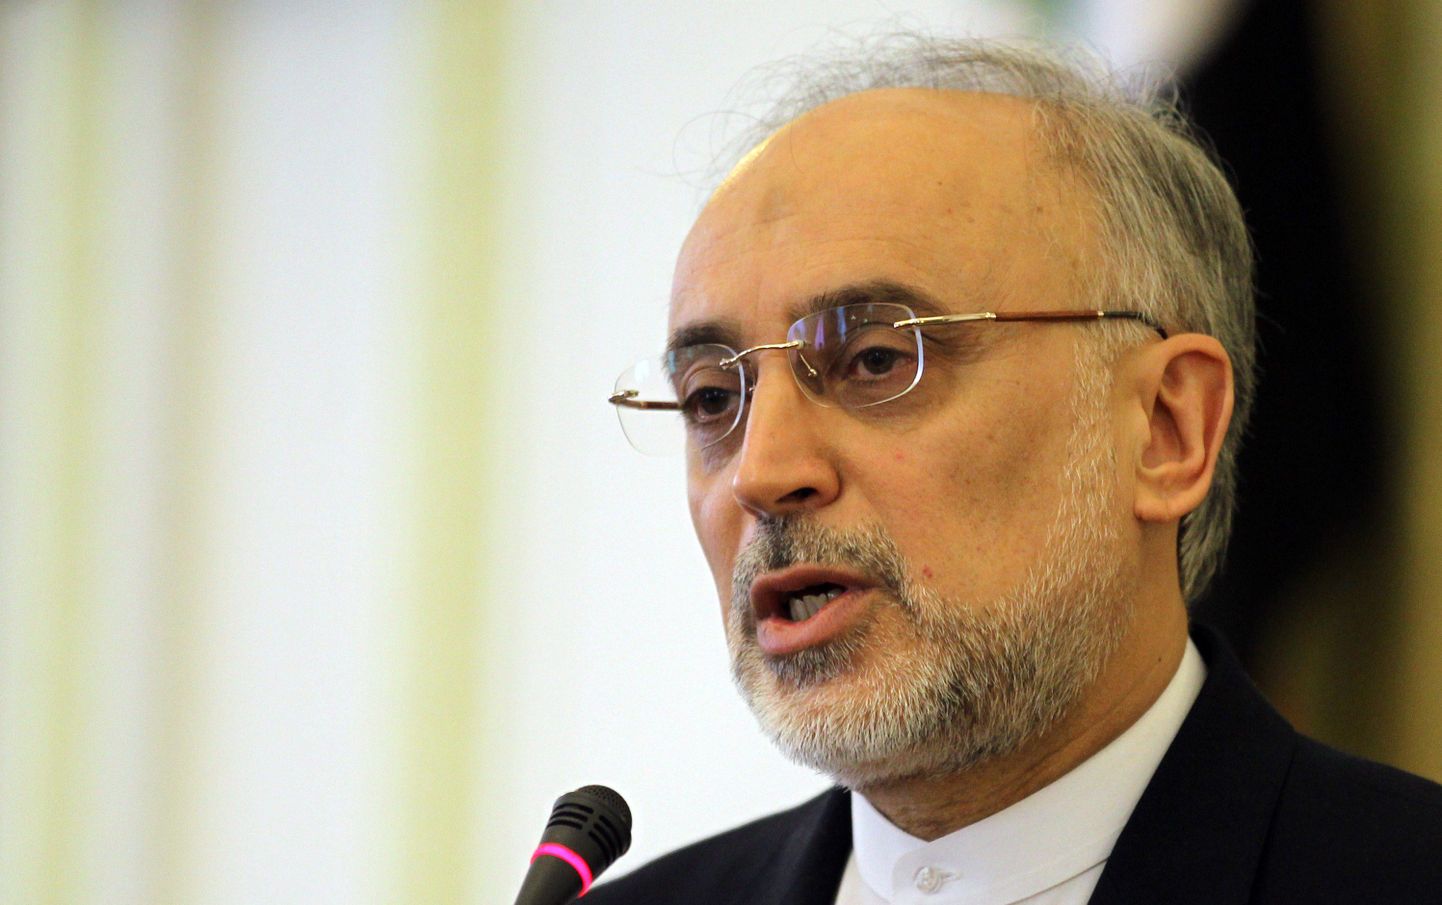 Iraani välisminister Ali Akbar Salehi tänasel pressikonverentsil Teheranis.